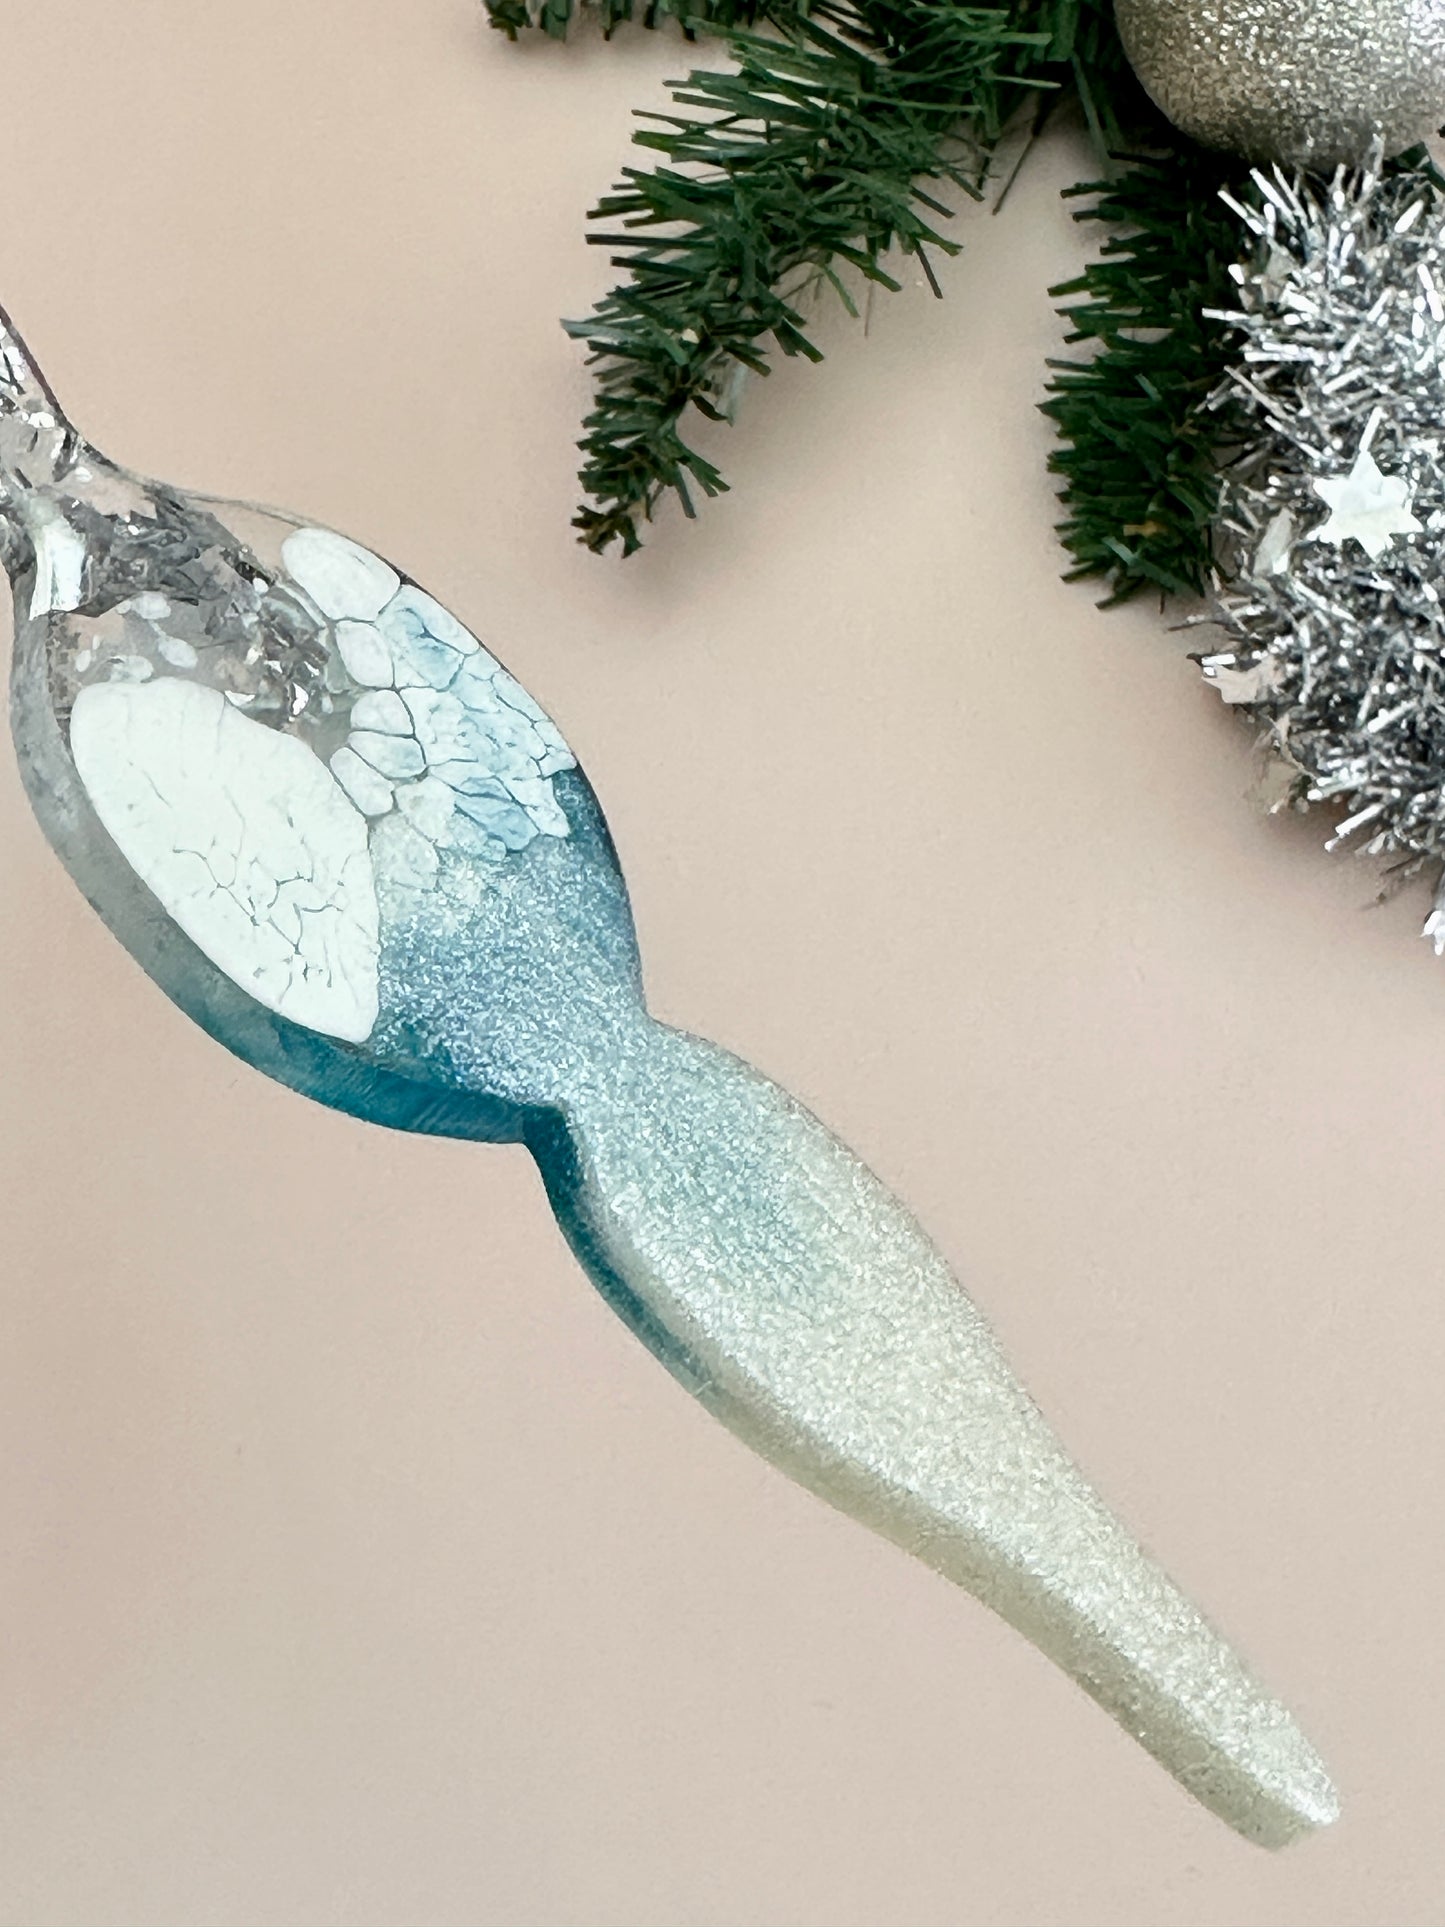 Рождественские свечи-снежинки: большая силиконовая форма для поделок из смолы, декора своими руками и подарков